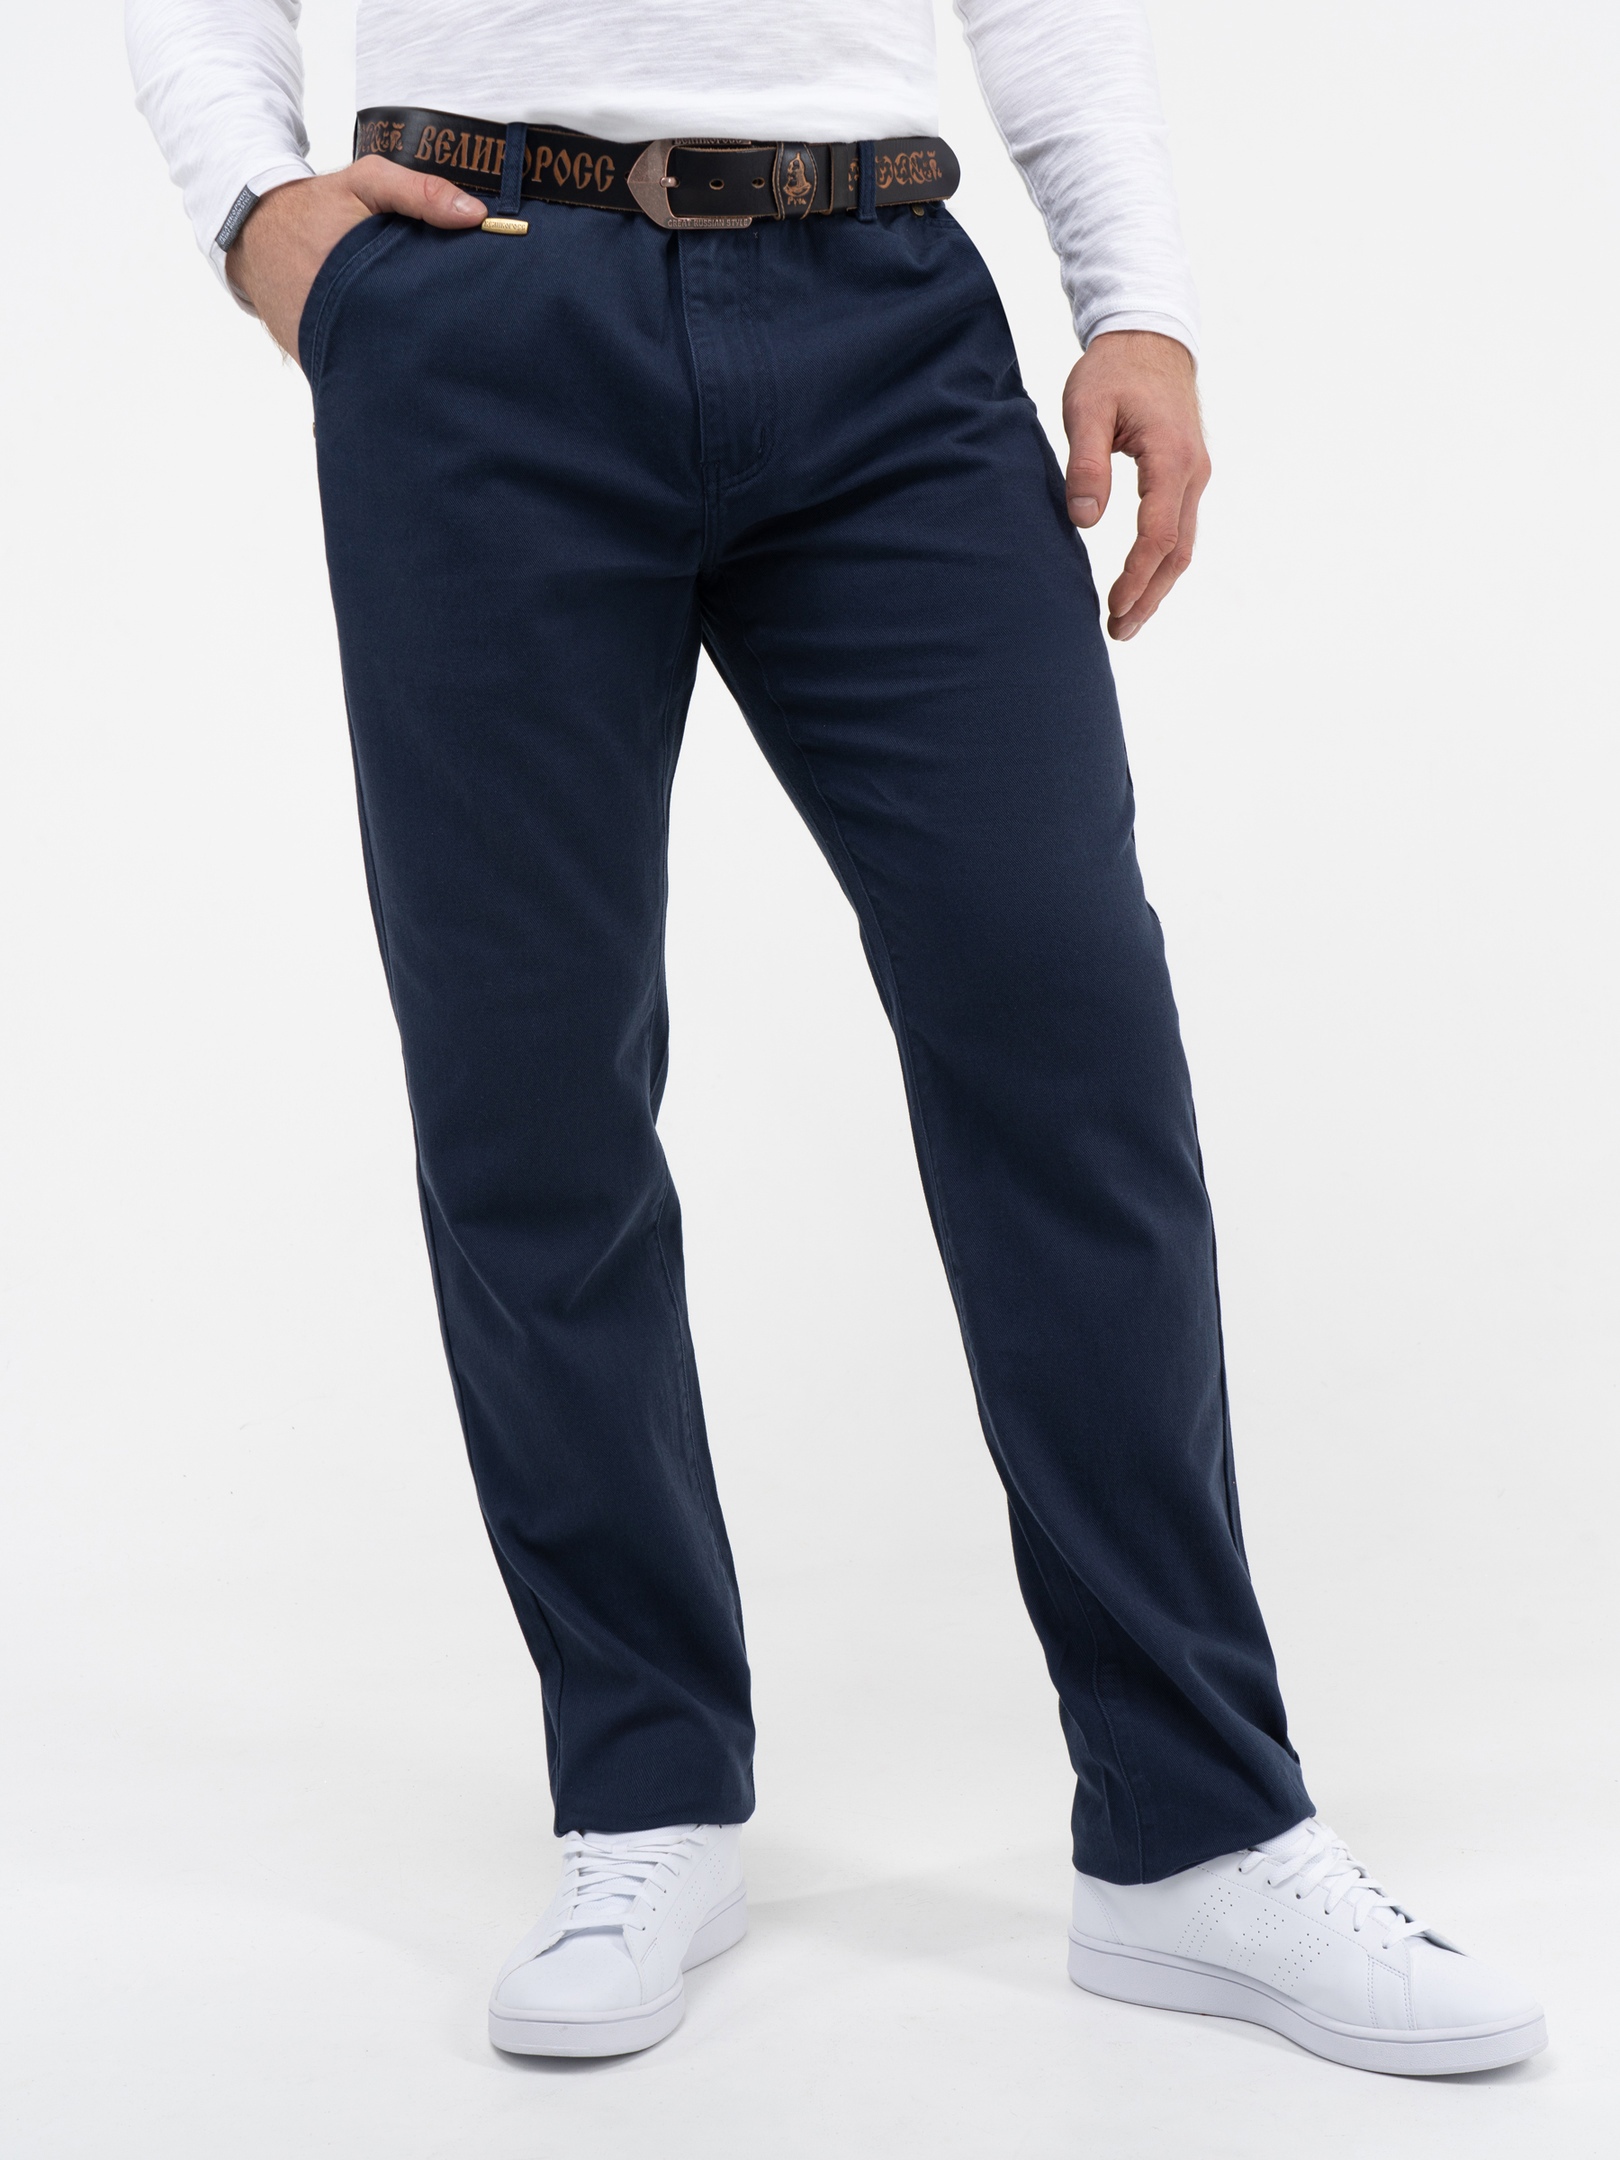 Купить джинсовые Мужские брюки в интернет каталоге с доставкой